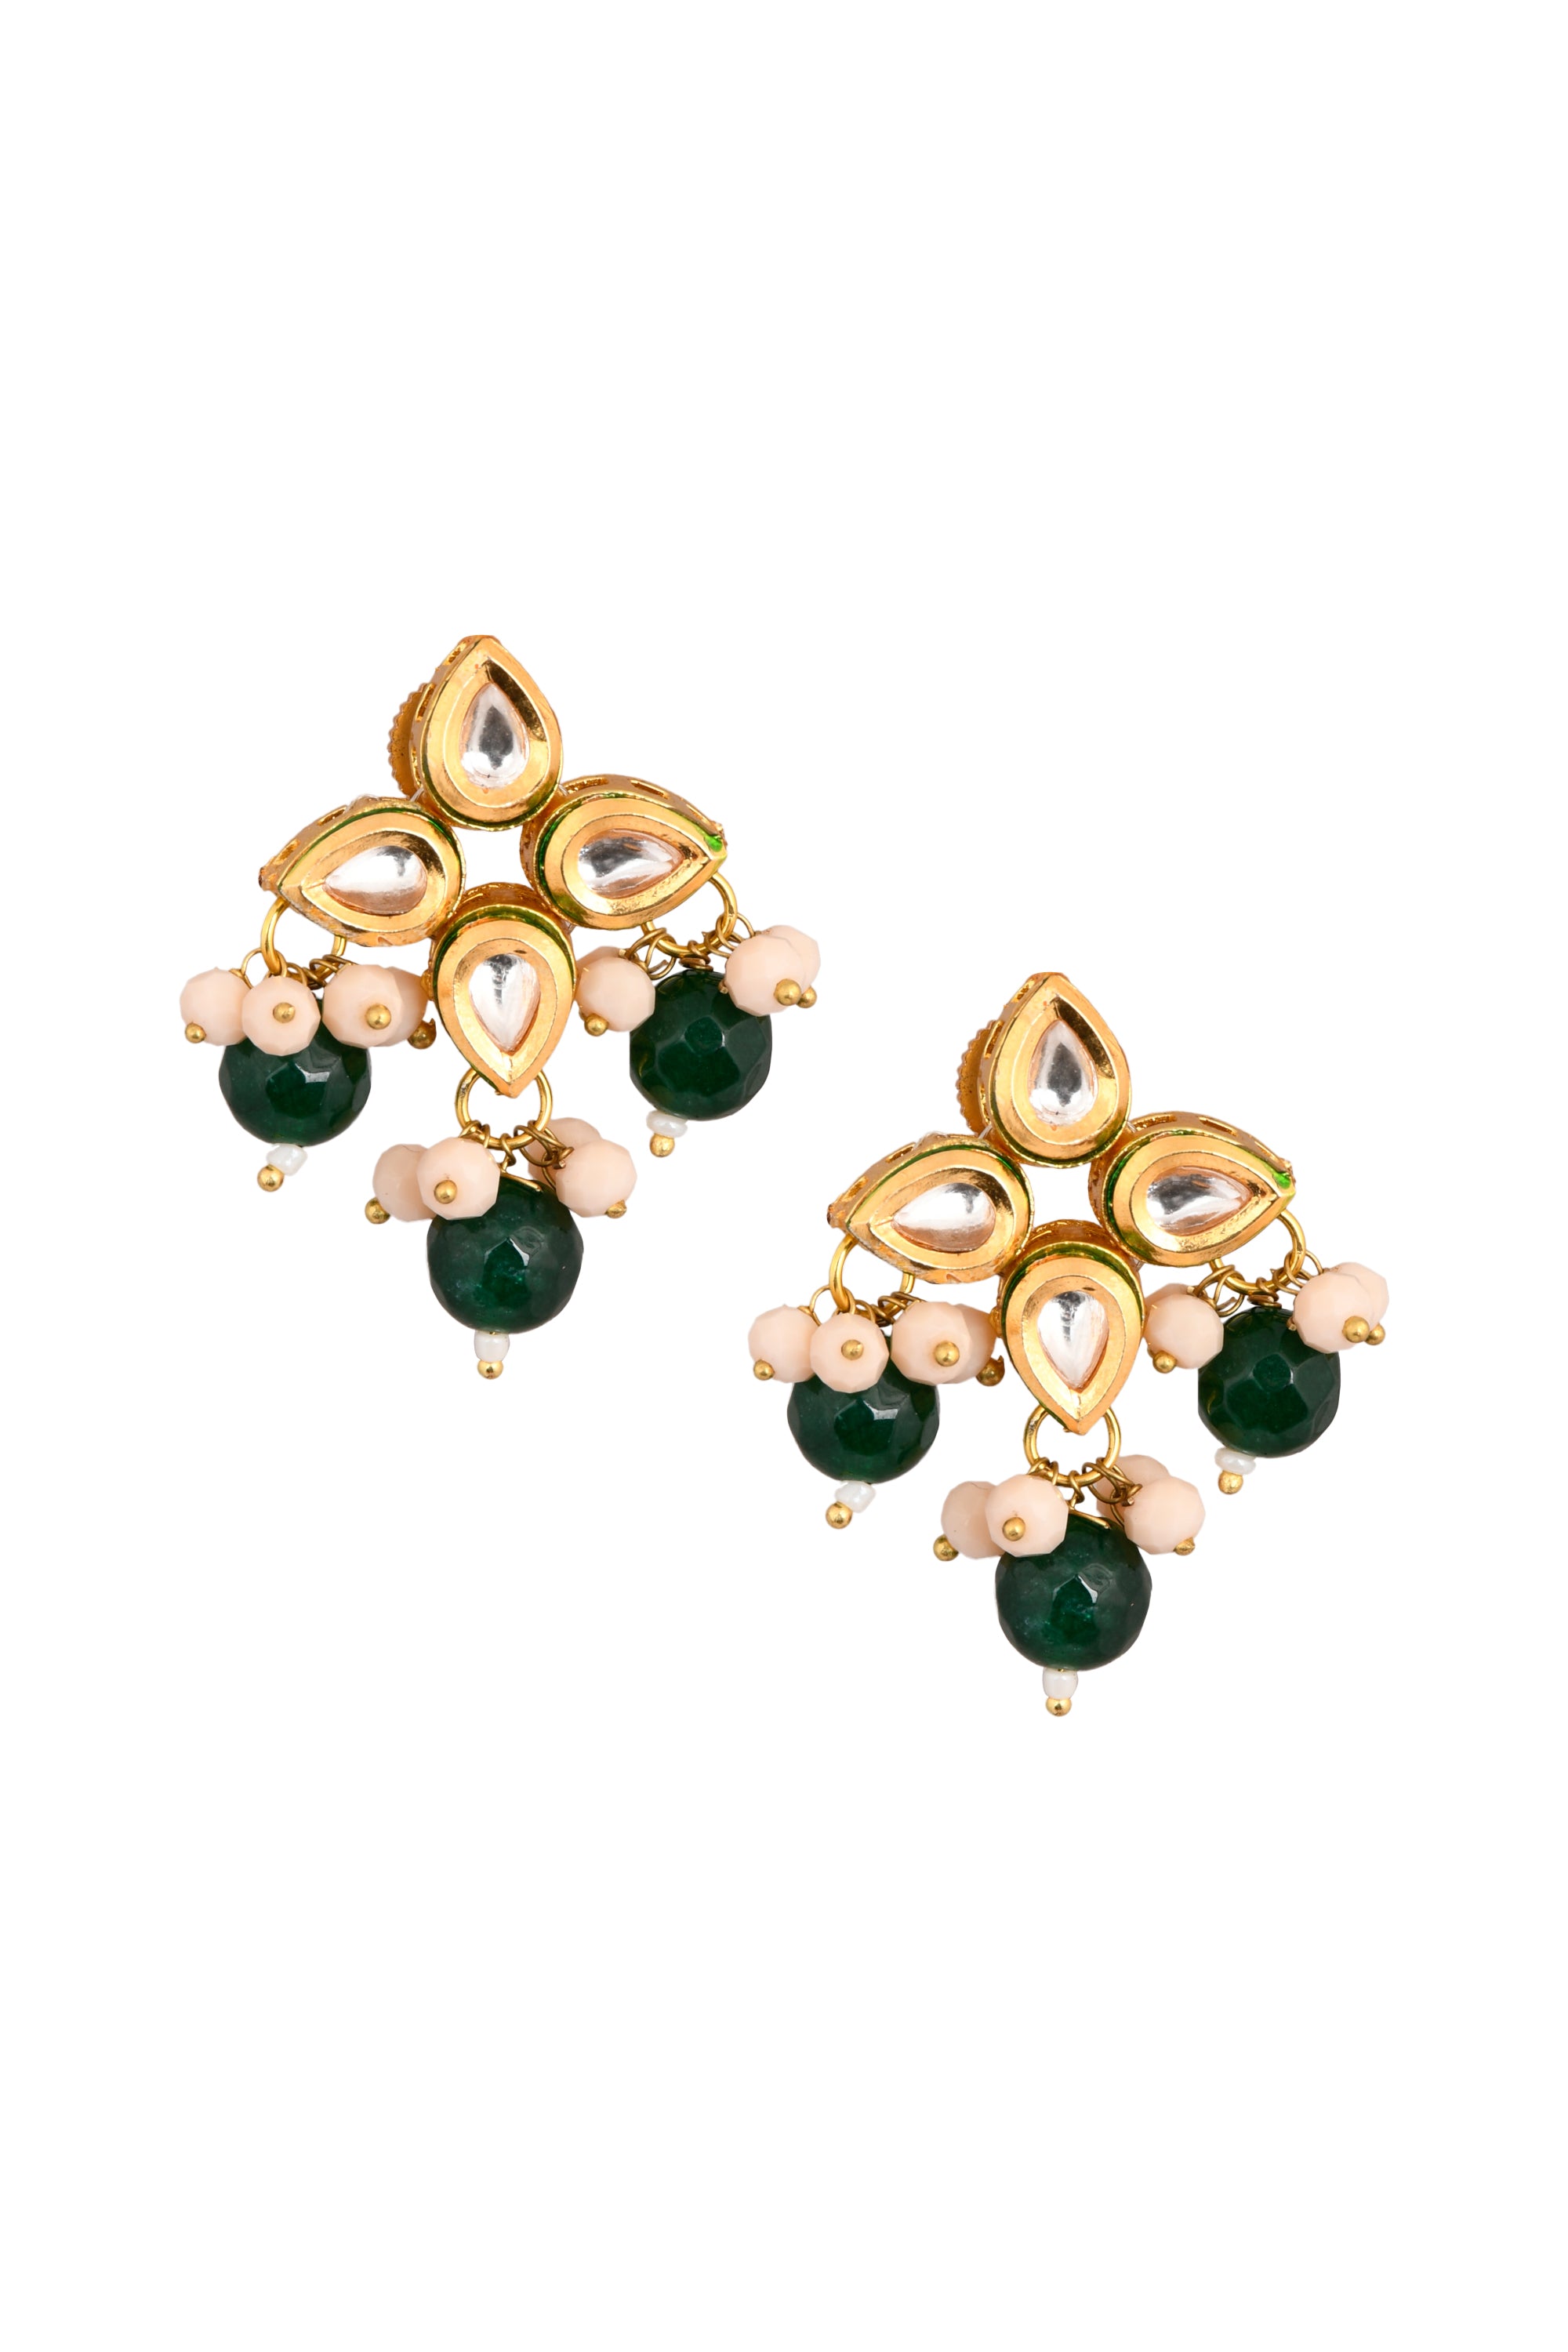 Green beaded Kundan inspired earrings